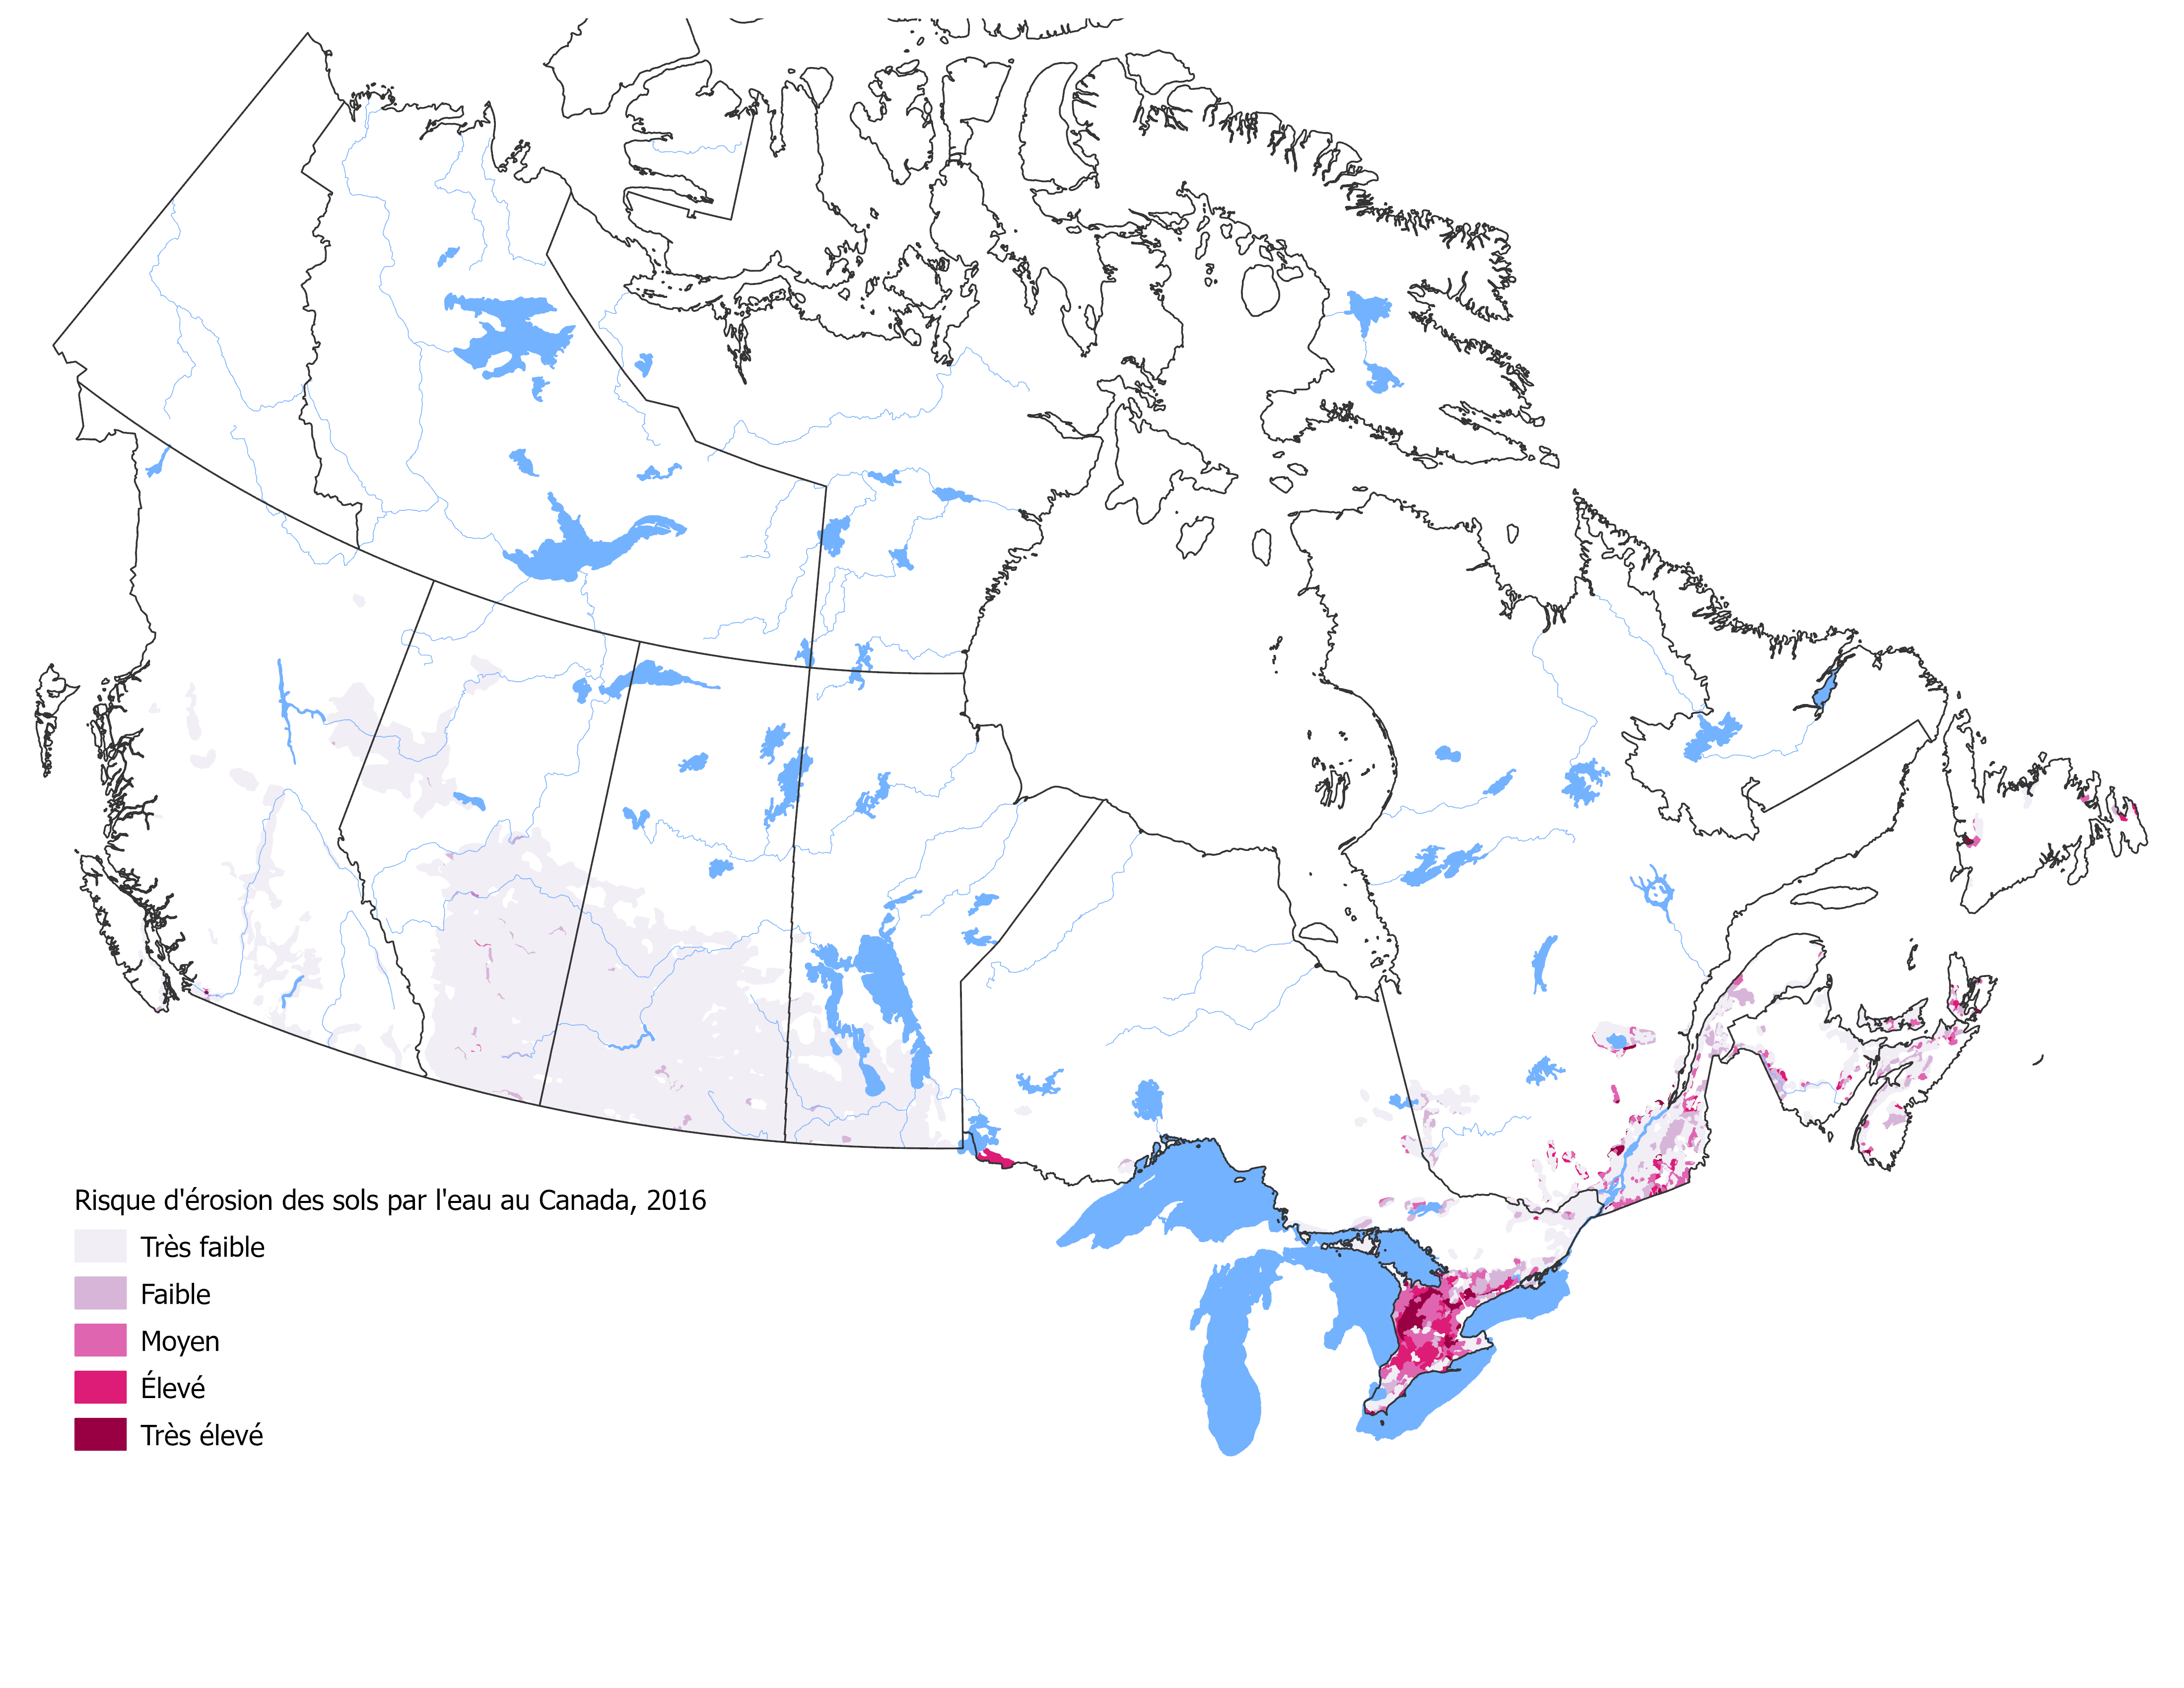 La figure 3 illustre le risque d'érosion du sol associé à la composante hydrique dans l'ensemble du Canada en 2016, avec un code de couleurs basé sur le niveau de risque.